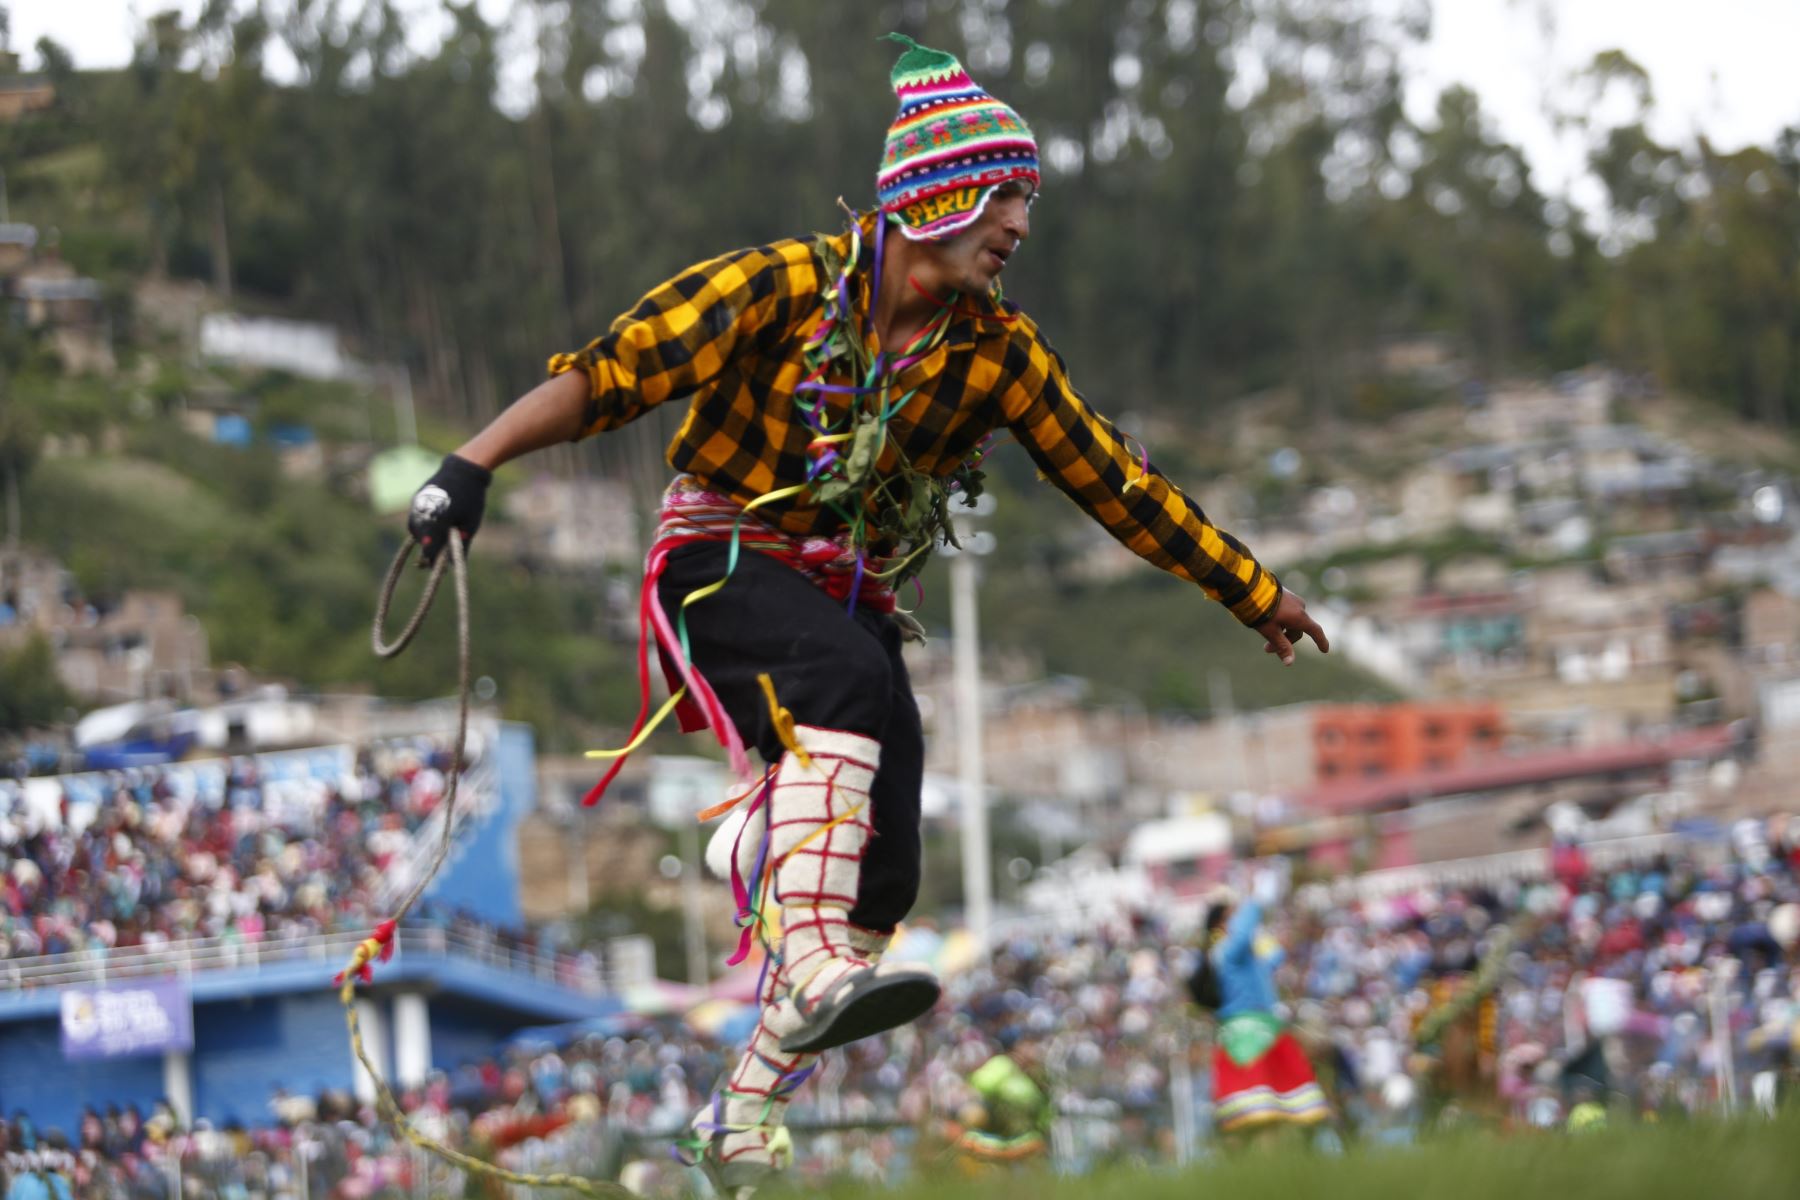 Andahuaylas se prepara para el “Encuentro del Carnaval Originario del Perú (Pukllay) Andahuaylas”, una de las fiestas de carnaval más importantes de Apurímac y del sur andino donde se muestran las danzas y música de las comunidades campesinas. Foto: PROMPERÚ